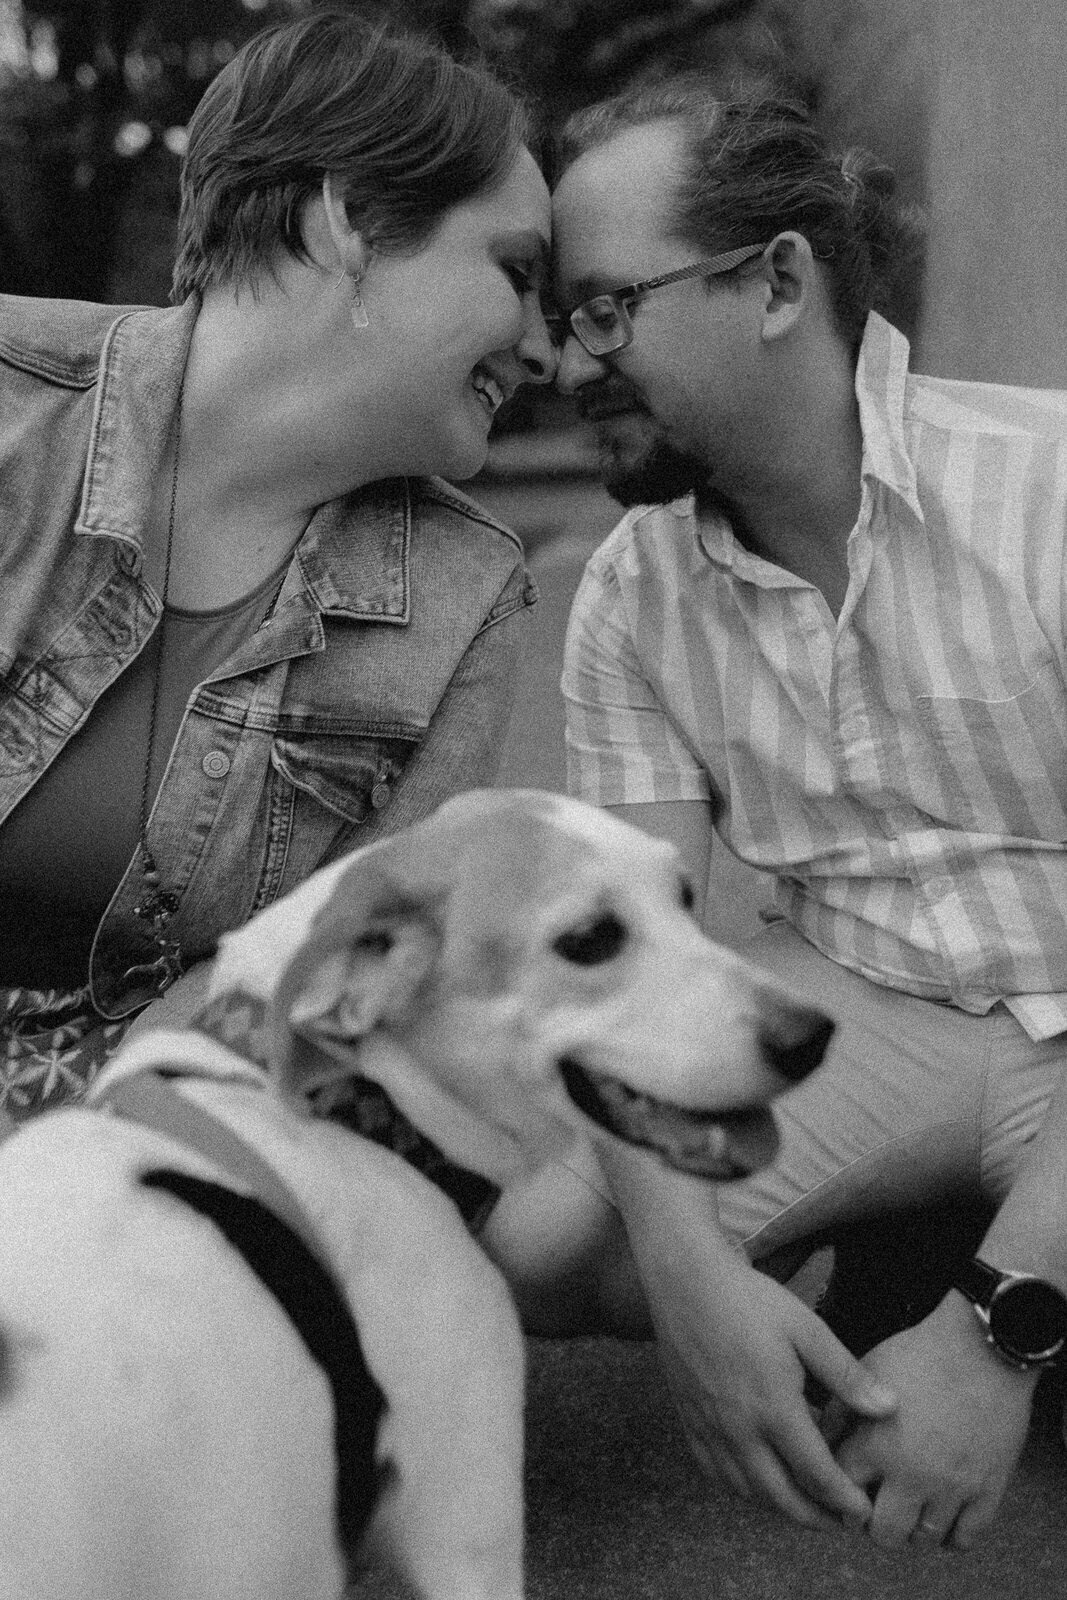 dog-family-photos-illinois-storytelling-emotional-25